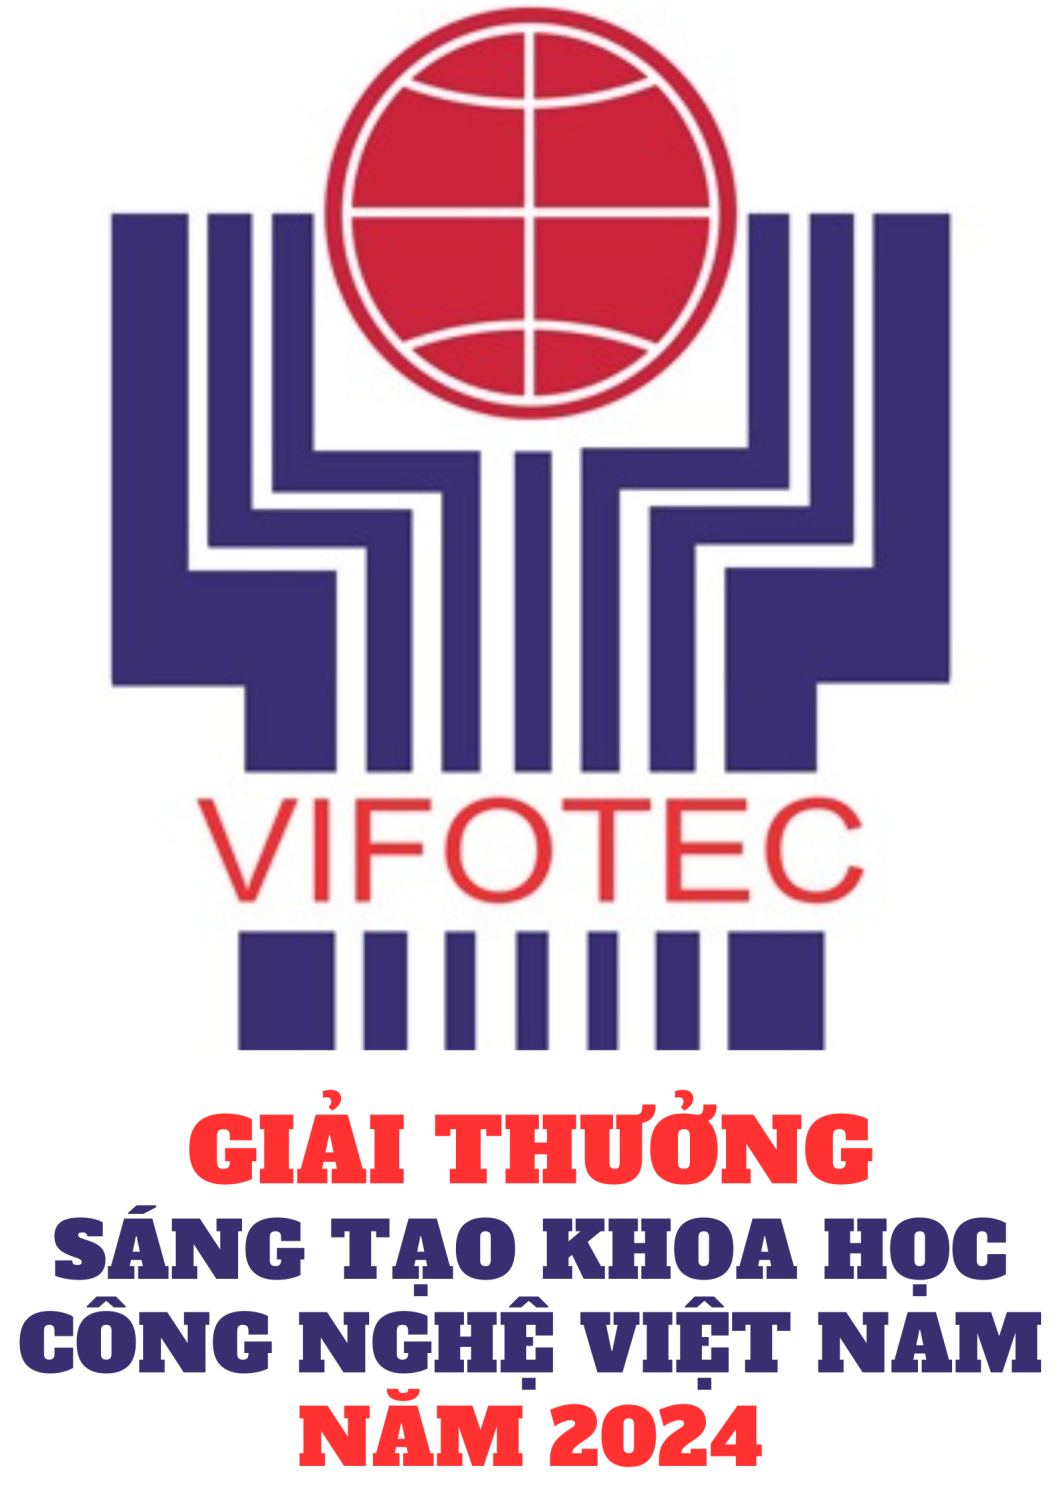 Triển khai Giải thưởng Sáng tạo Khoa học Công nghệ Việt Nam năm 2024.